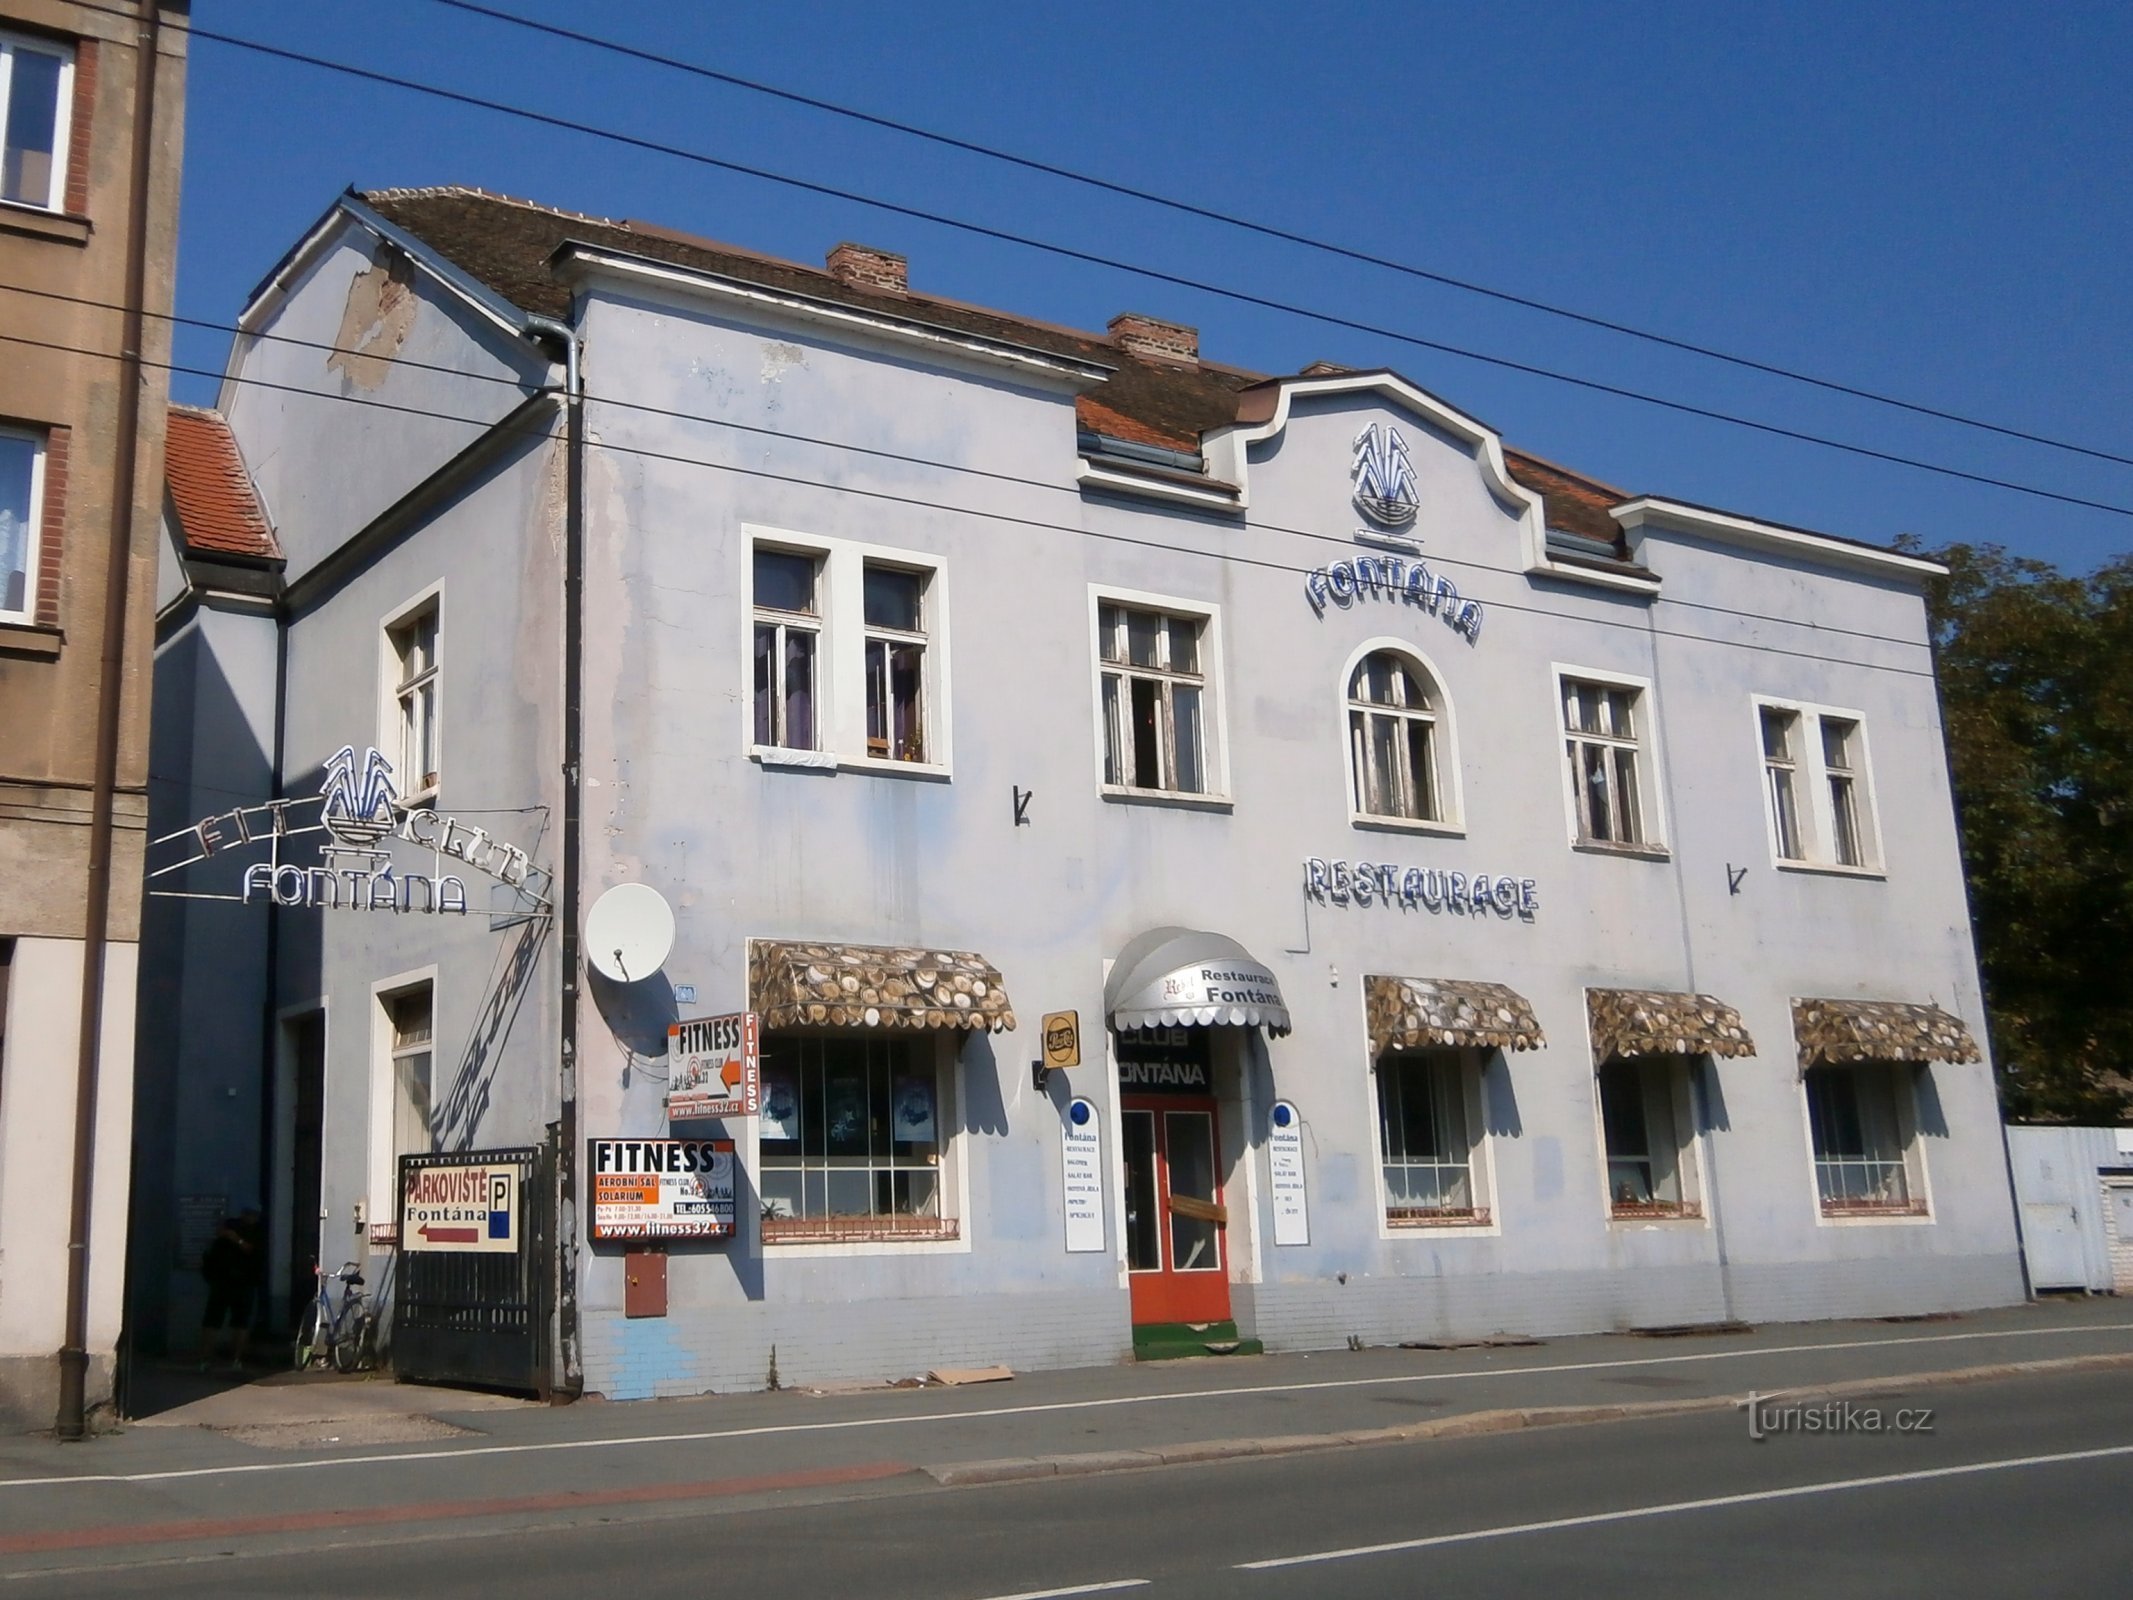 餐厅 Fontána (Hradec Králové, 17.9.2014/XNUMX/XNUMX)